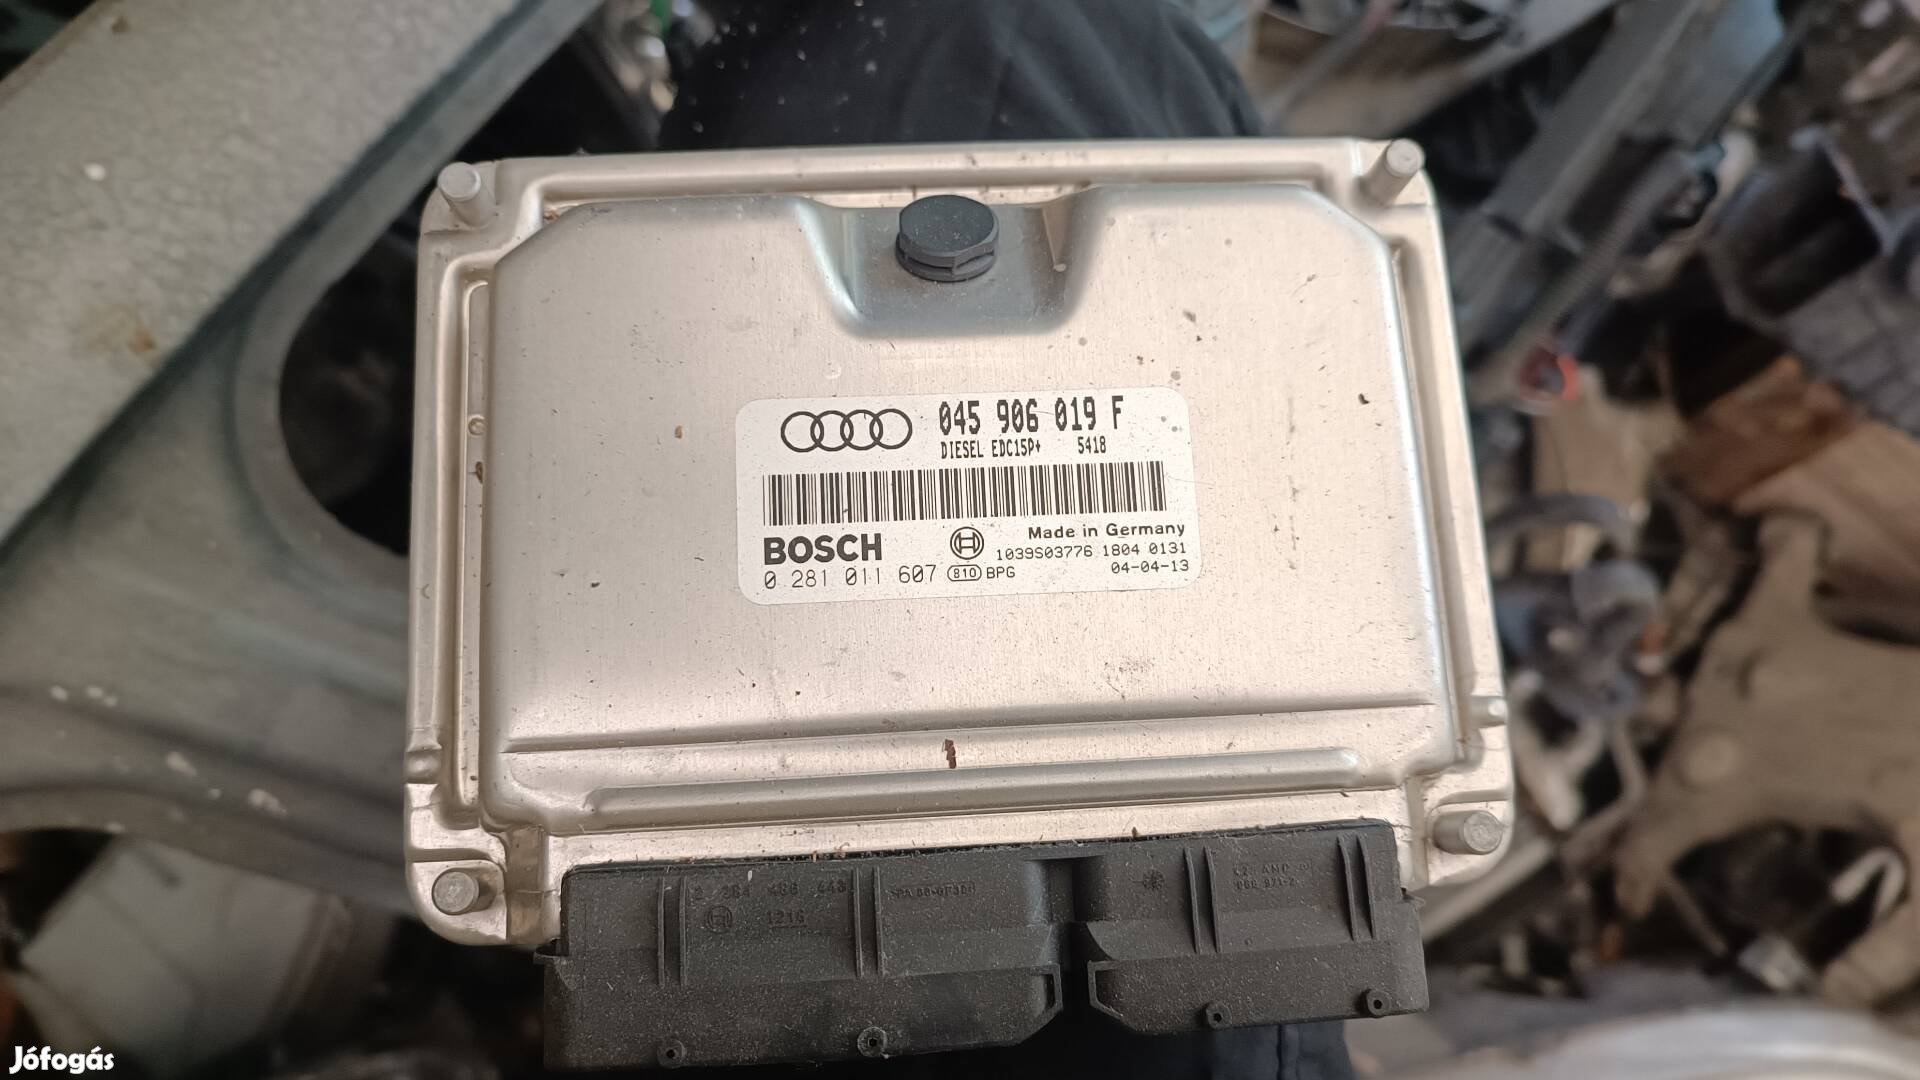 Audi a2 1.4 TDI edc15 045906019F motorvezérlő elektronika gyári